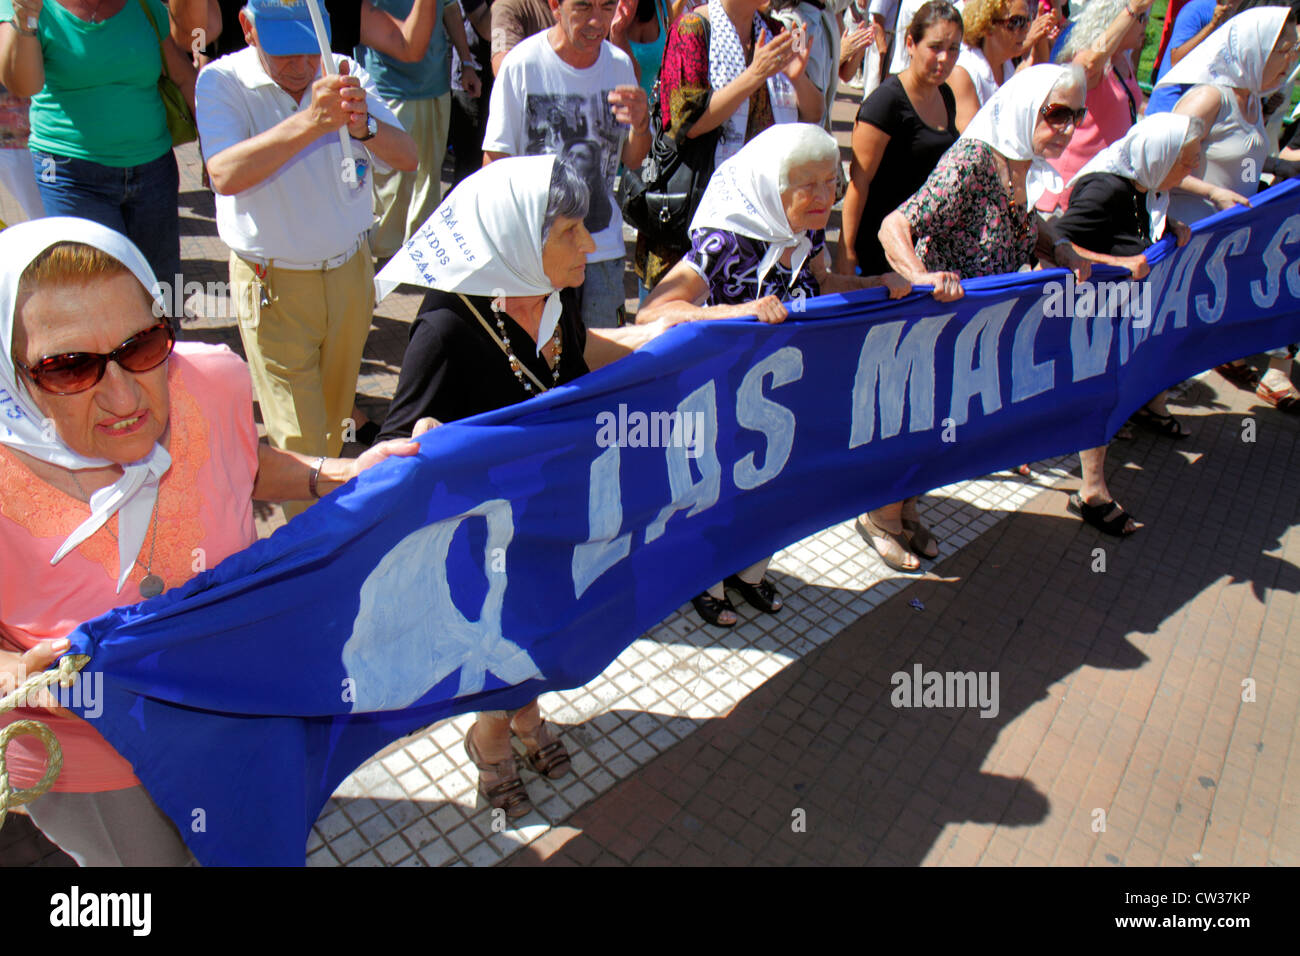 Buenos Aires Argentinien, Plaza de Mayo historischer Hauptplatz, politischer Mittelpunkt, Protest, Demonstration, Islas Malvinas, Falklandinseln Krieg, lateinisches Lateinamerikas Stockfoto